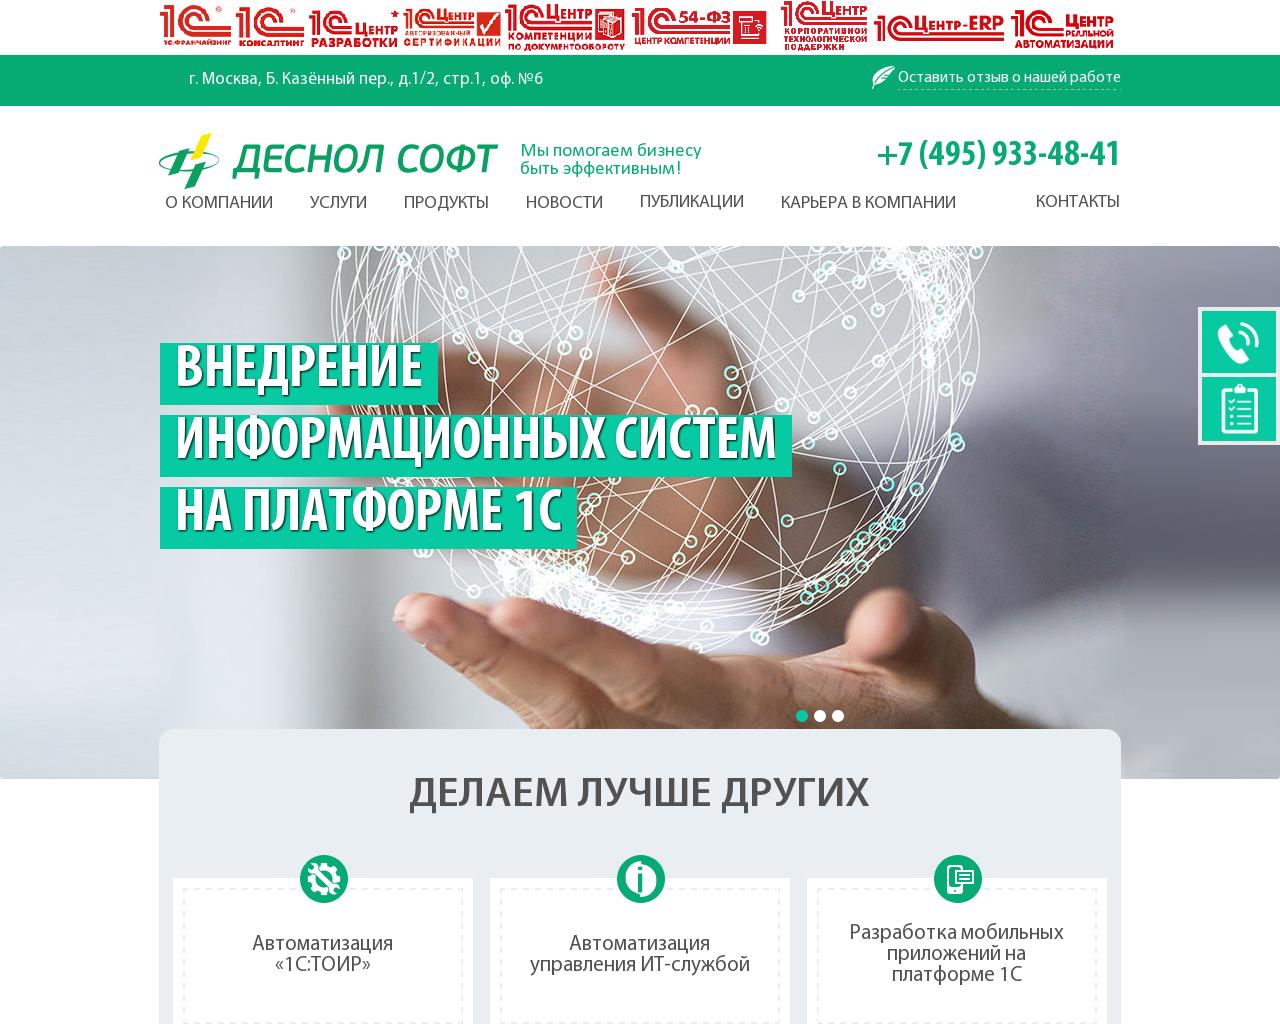 Изображение сайта desnolsoft.ru в разрешении 1280x1024